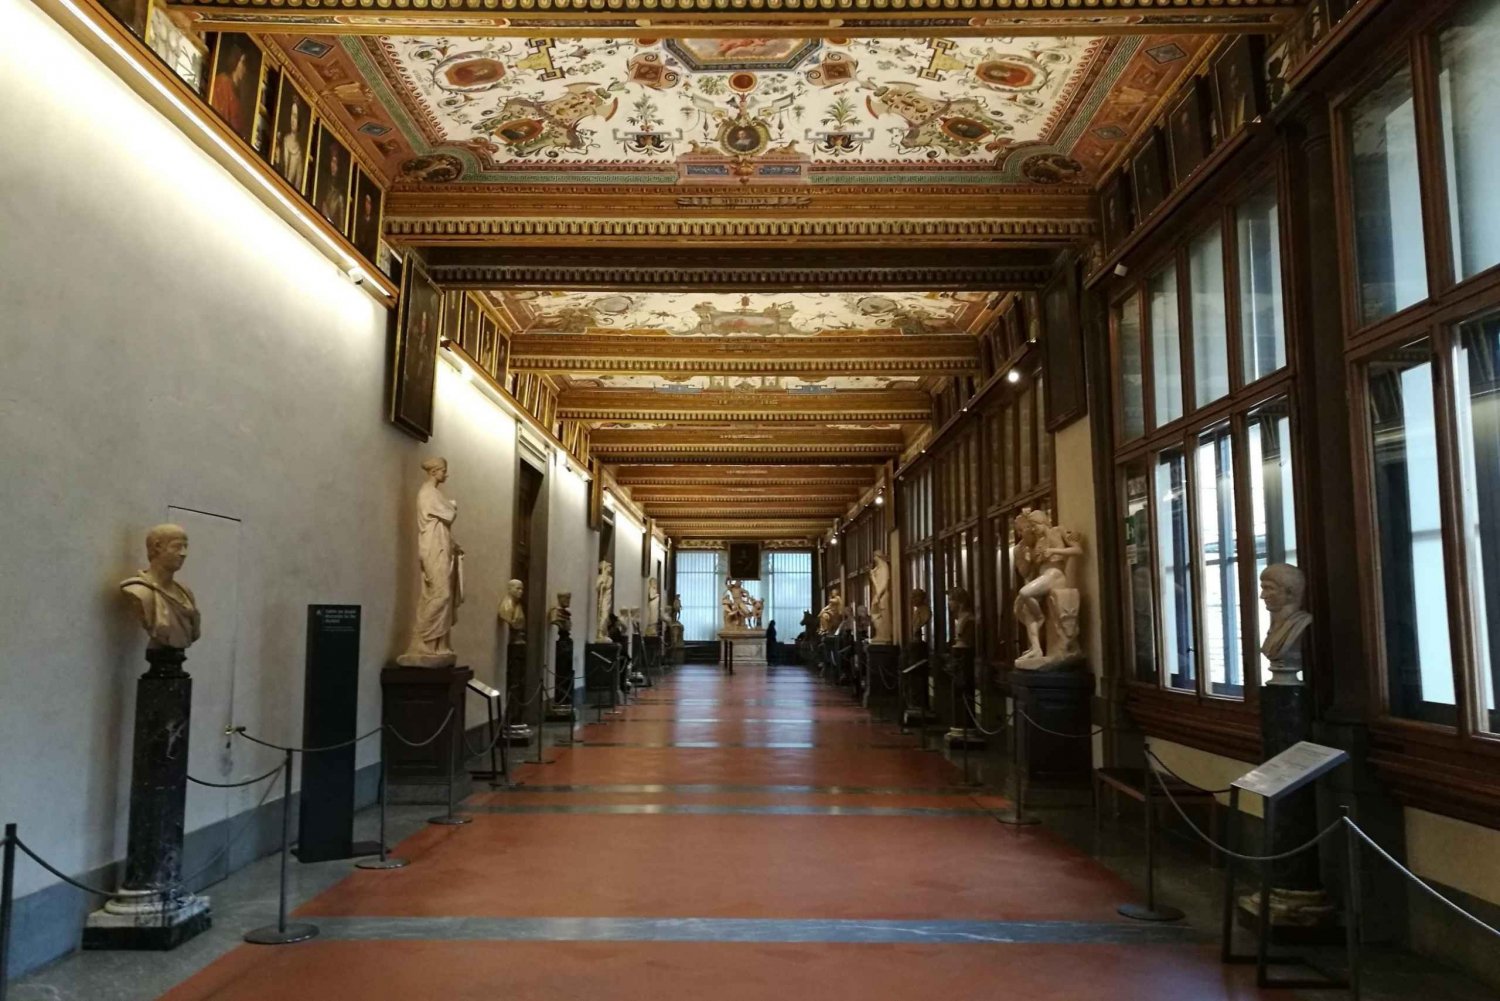 Firenze: tour guidato della Galleria degli Uffizi al mattino presto